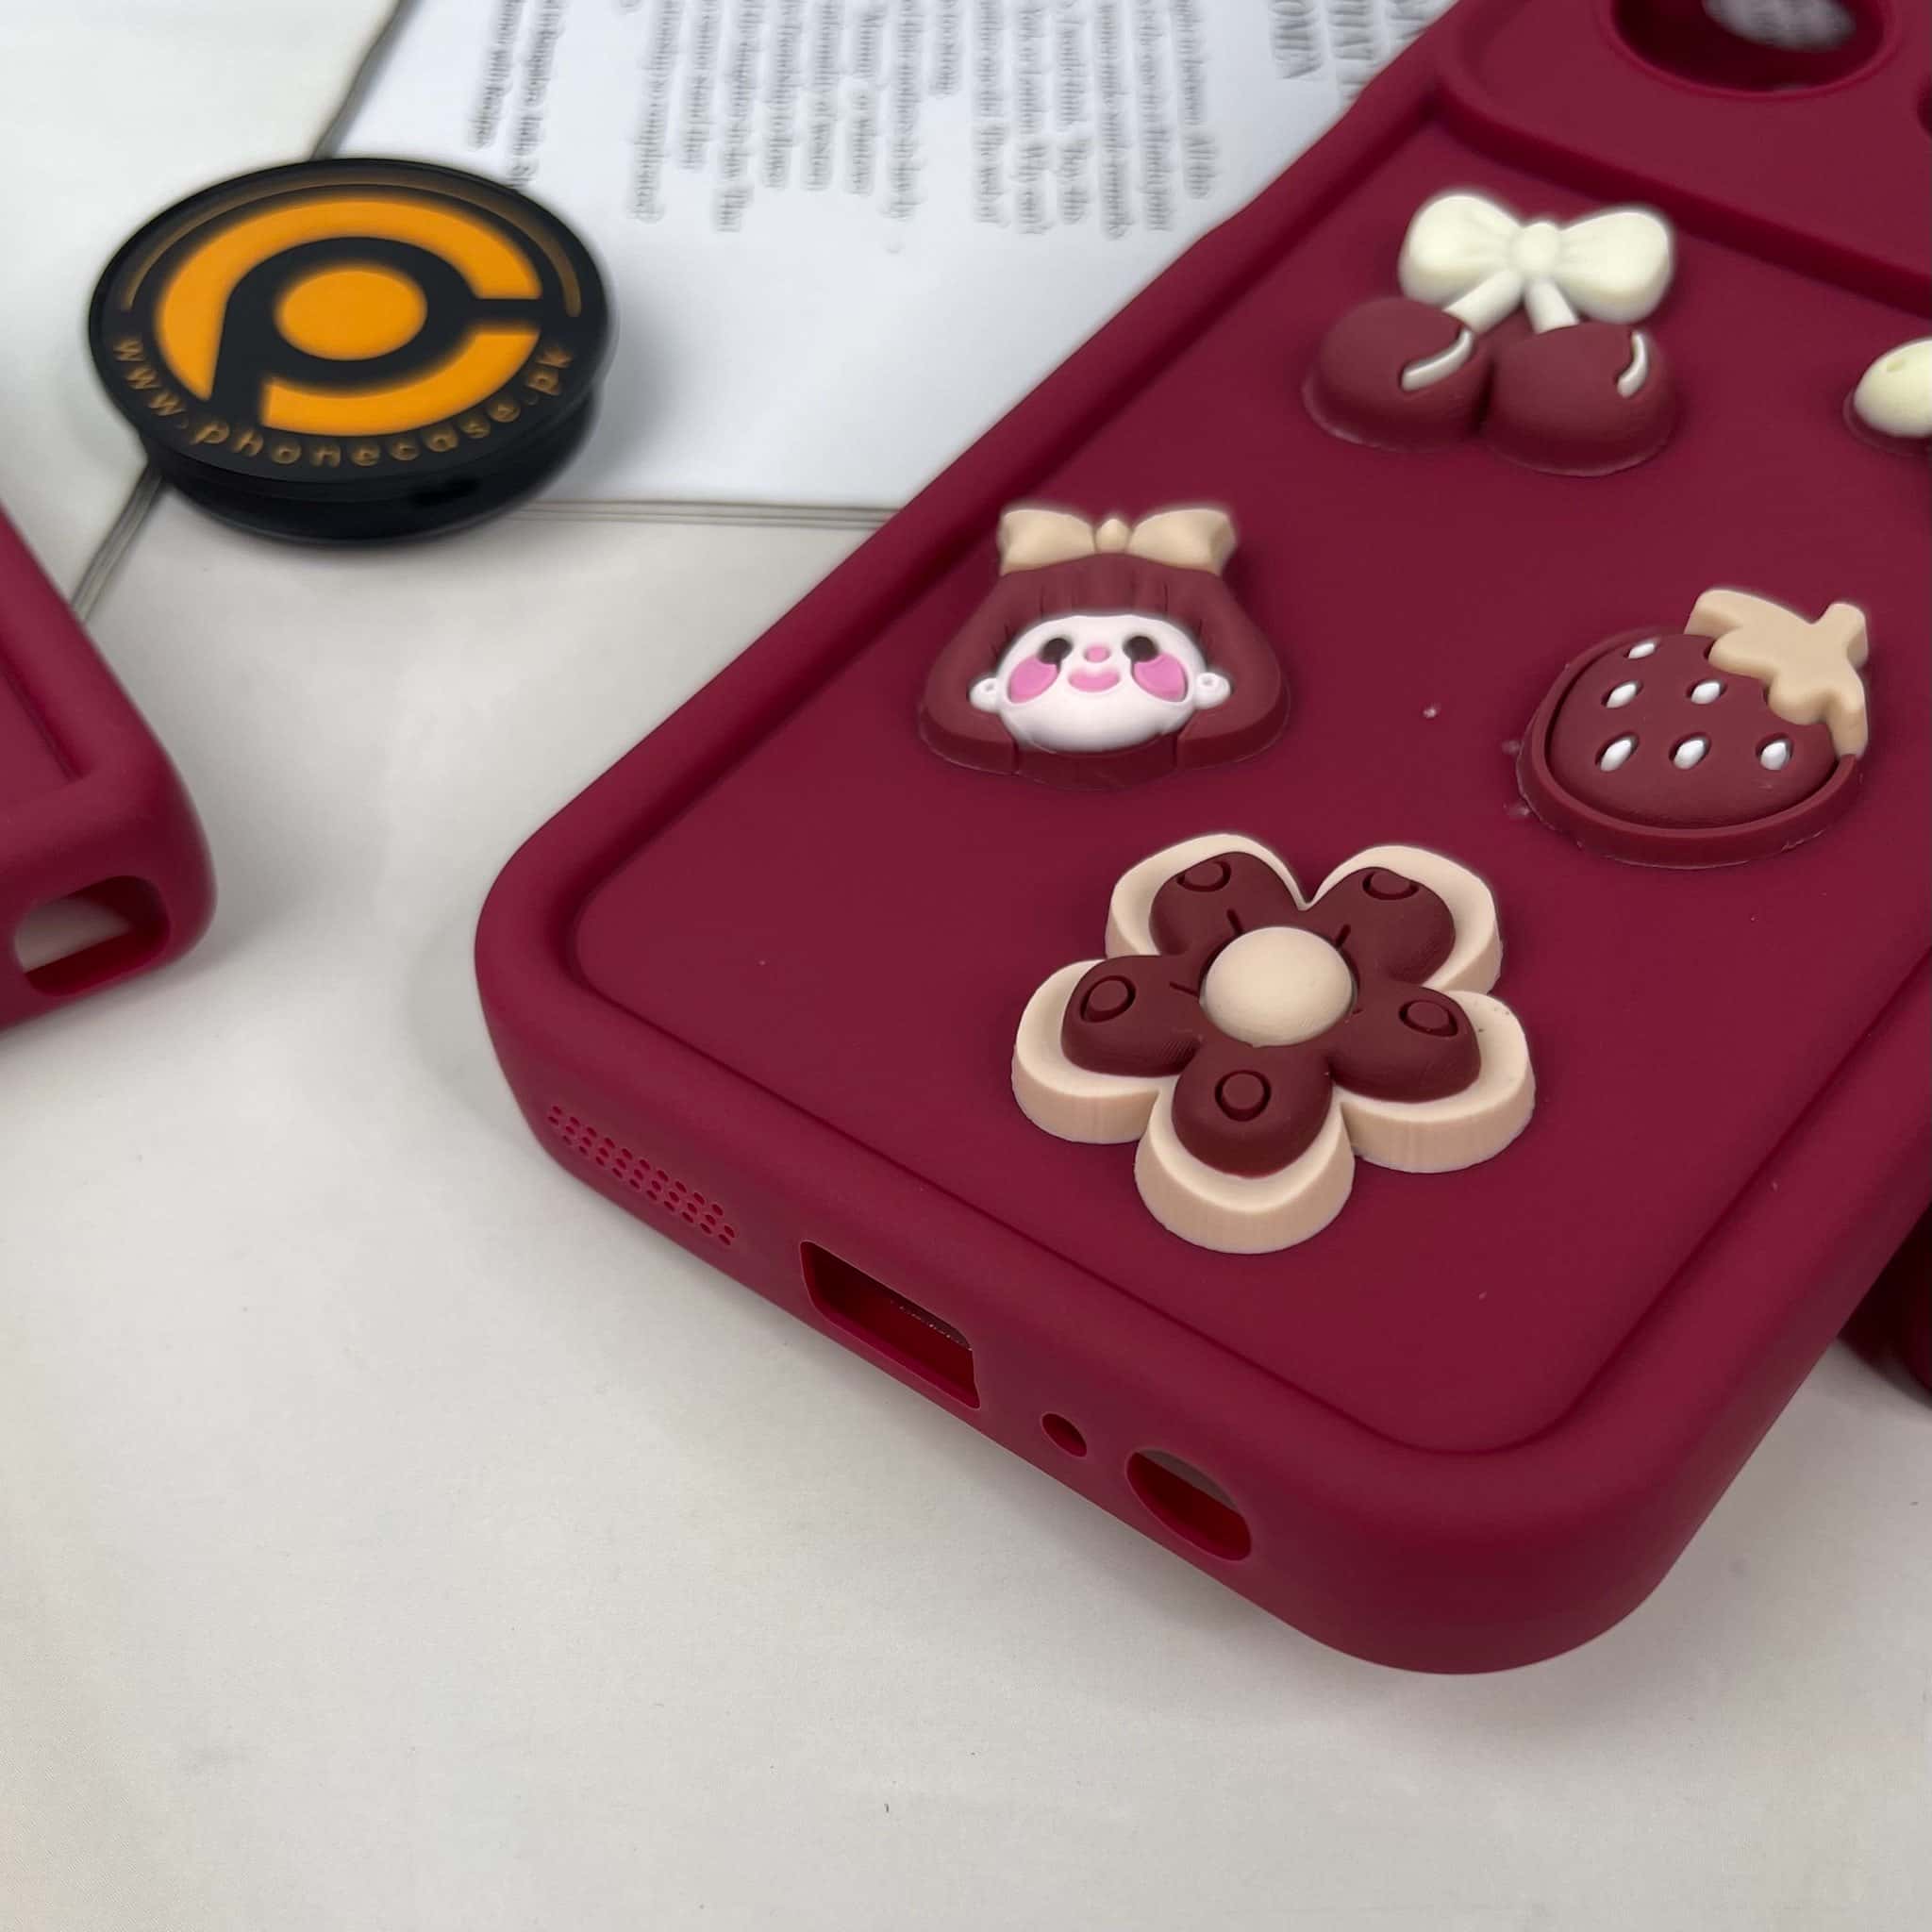 Oppo A57 2022 /A57E /A57S /A77 /N20 SE /A77S Cute 3D Cherry Flower Icons Silicon Case